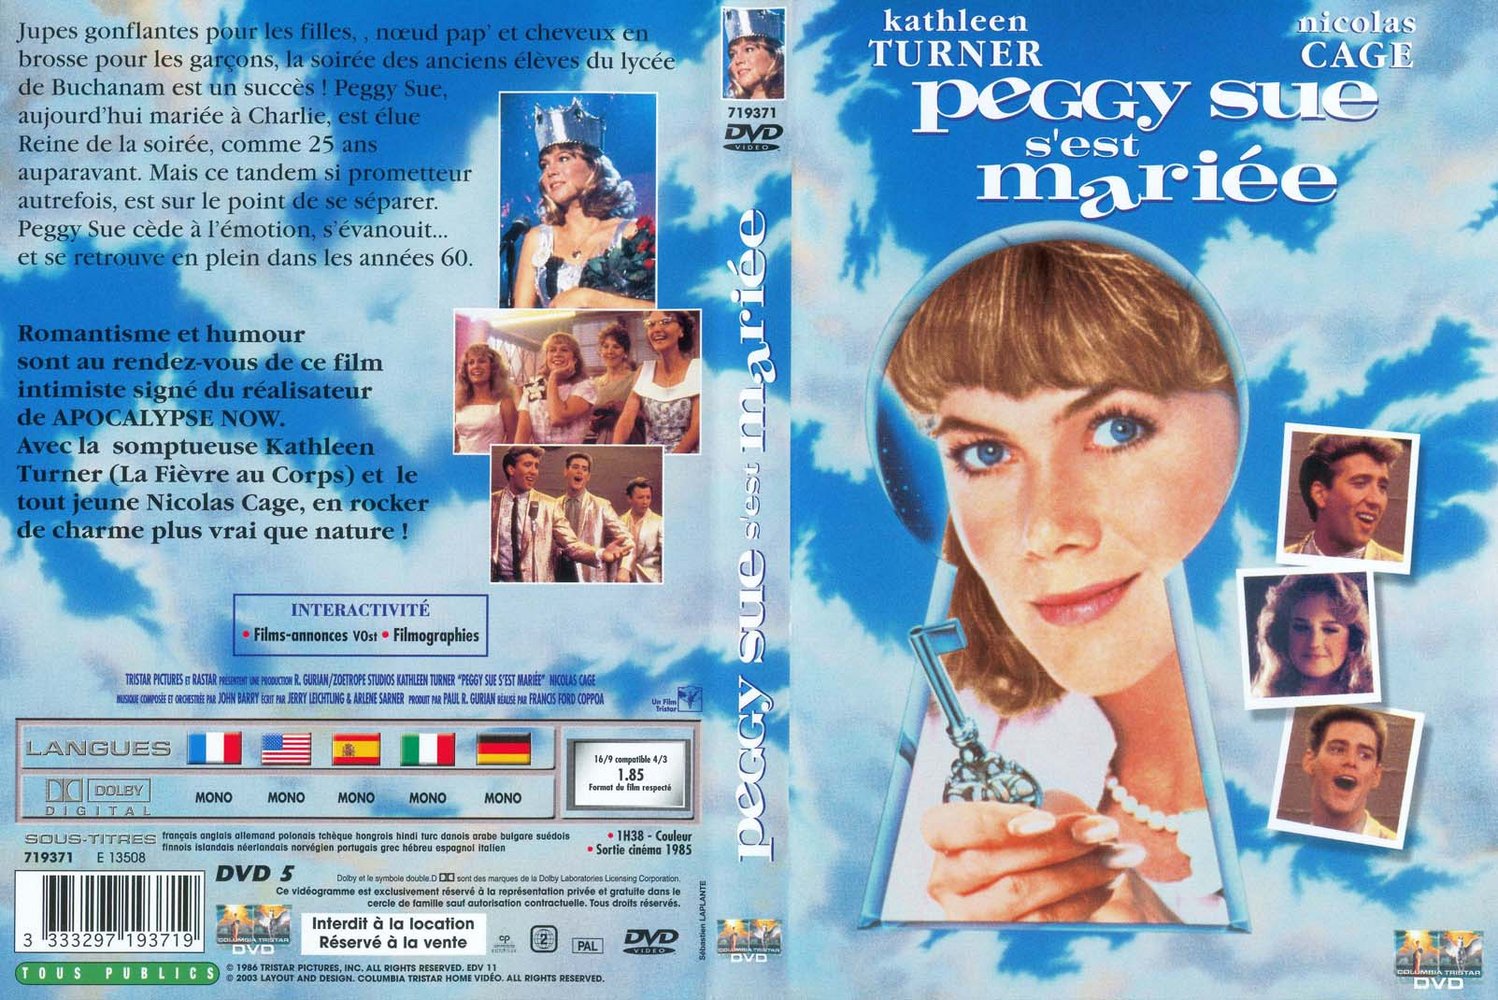 Jaquette DVD Peggy Sue s